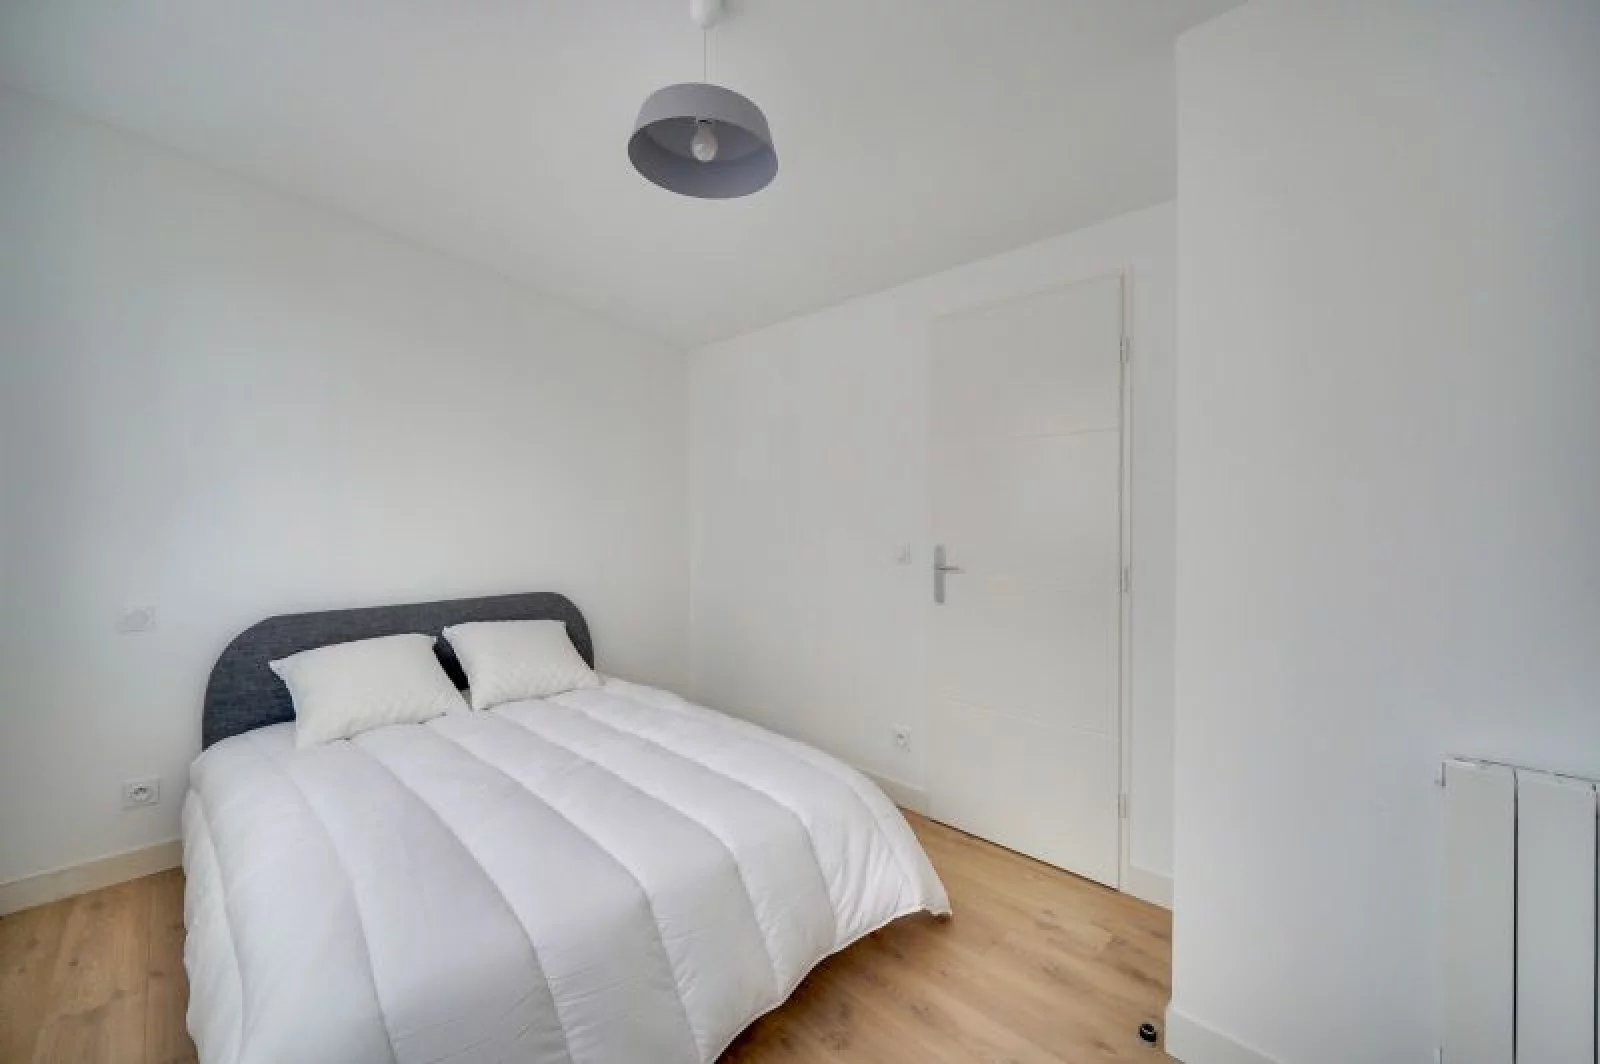 Location appartement meublé 50m² (Bordeaux centre - Ornano)